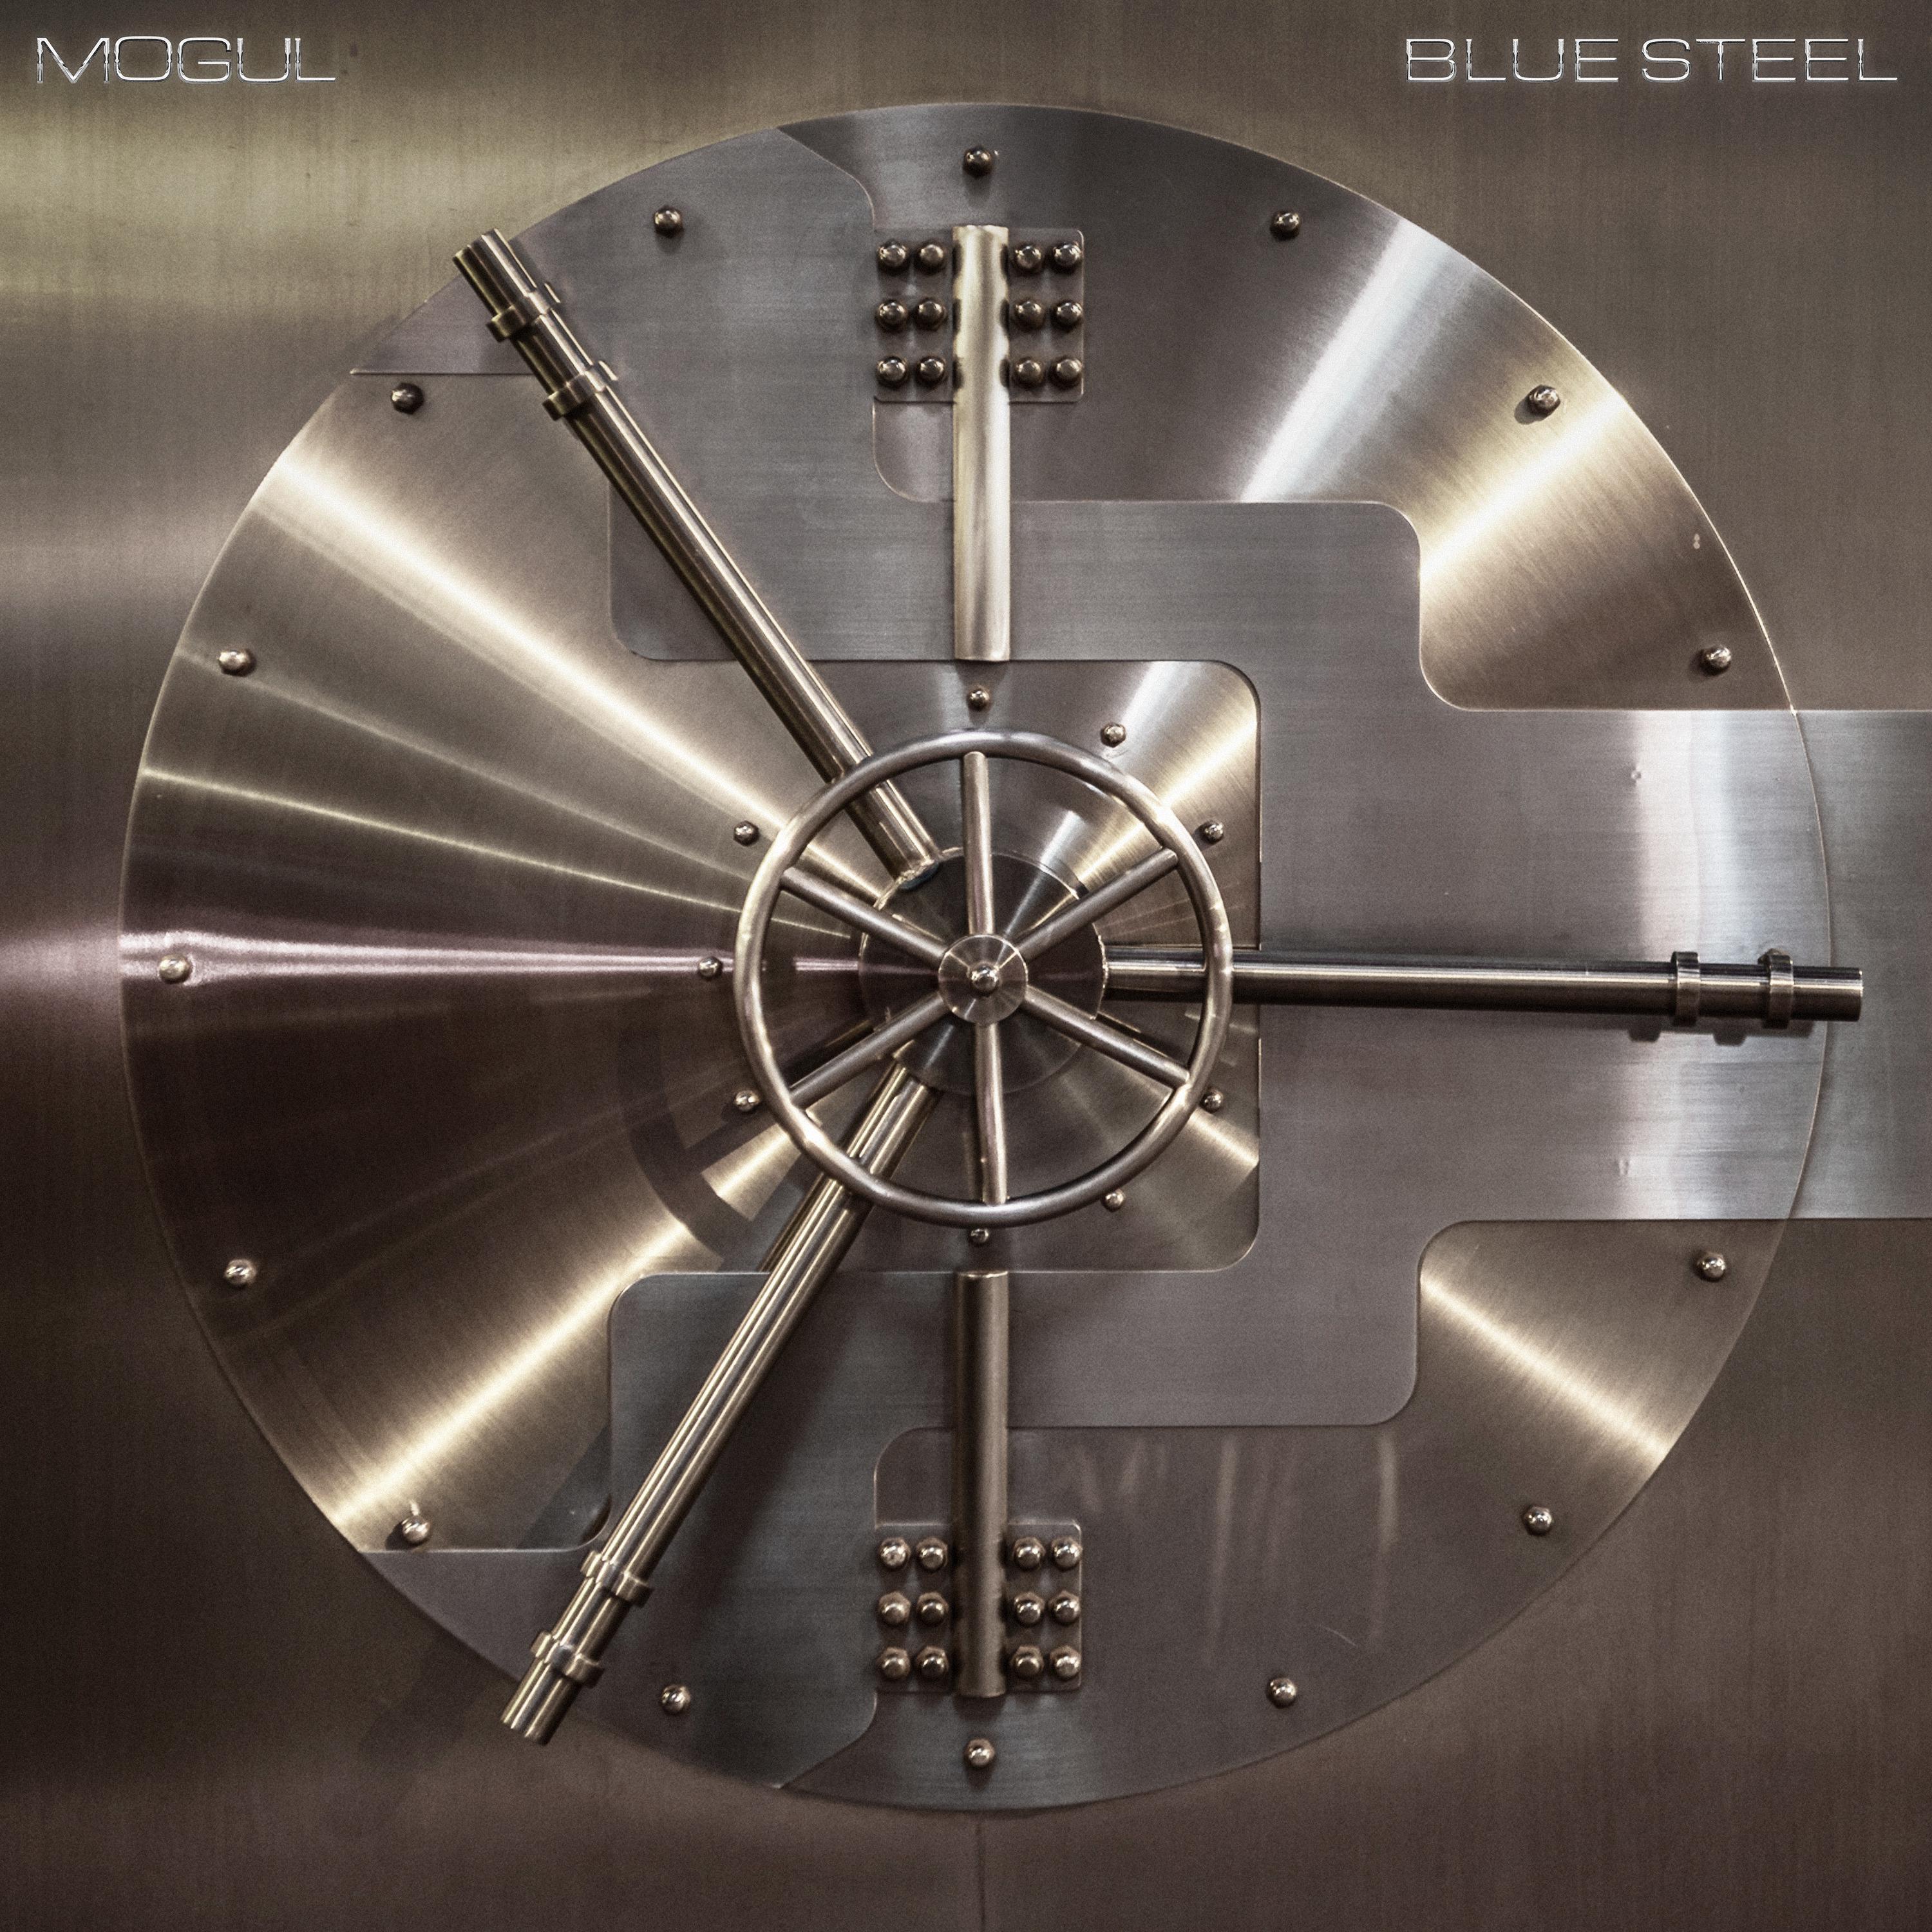 Blue Steel - MOGUL